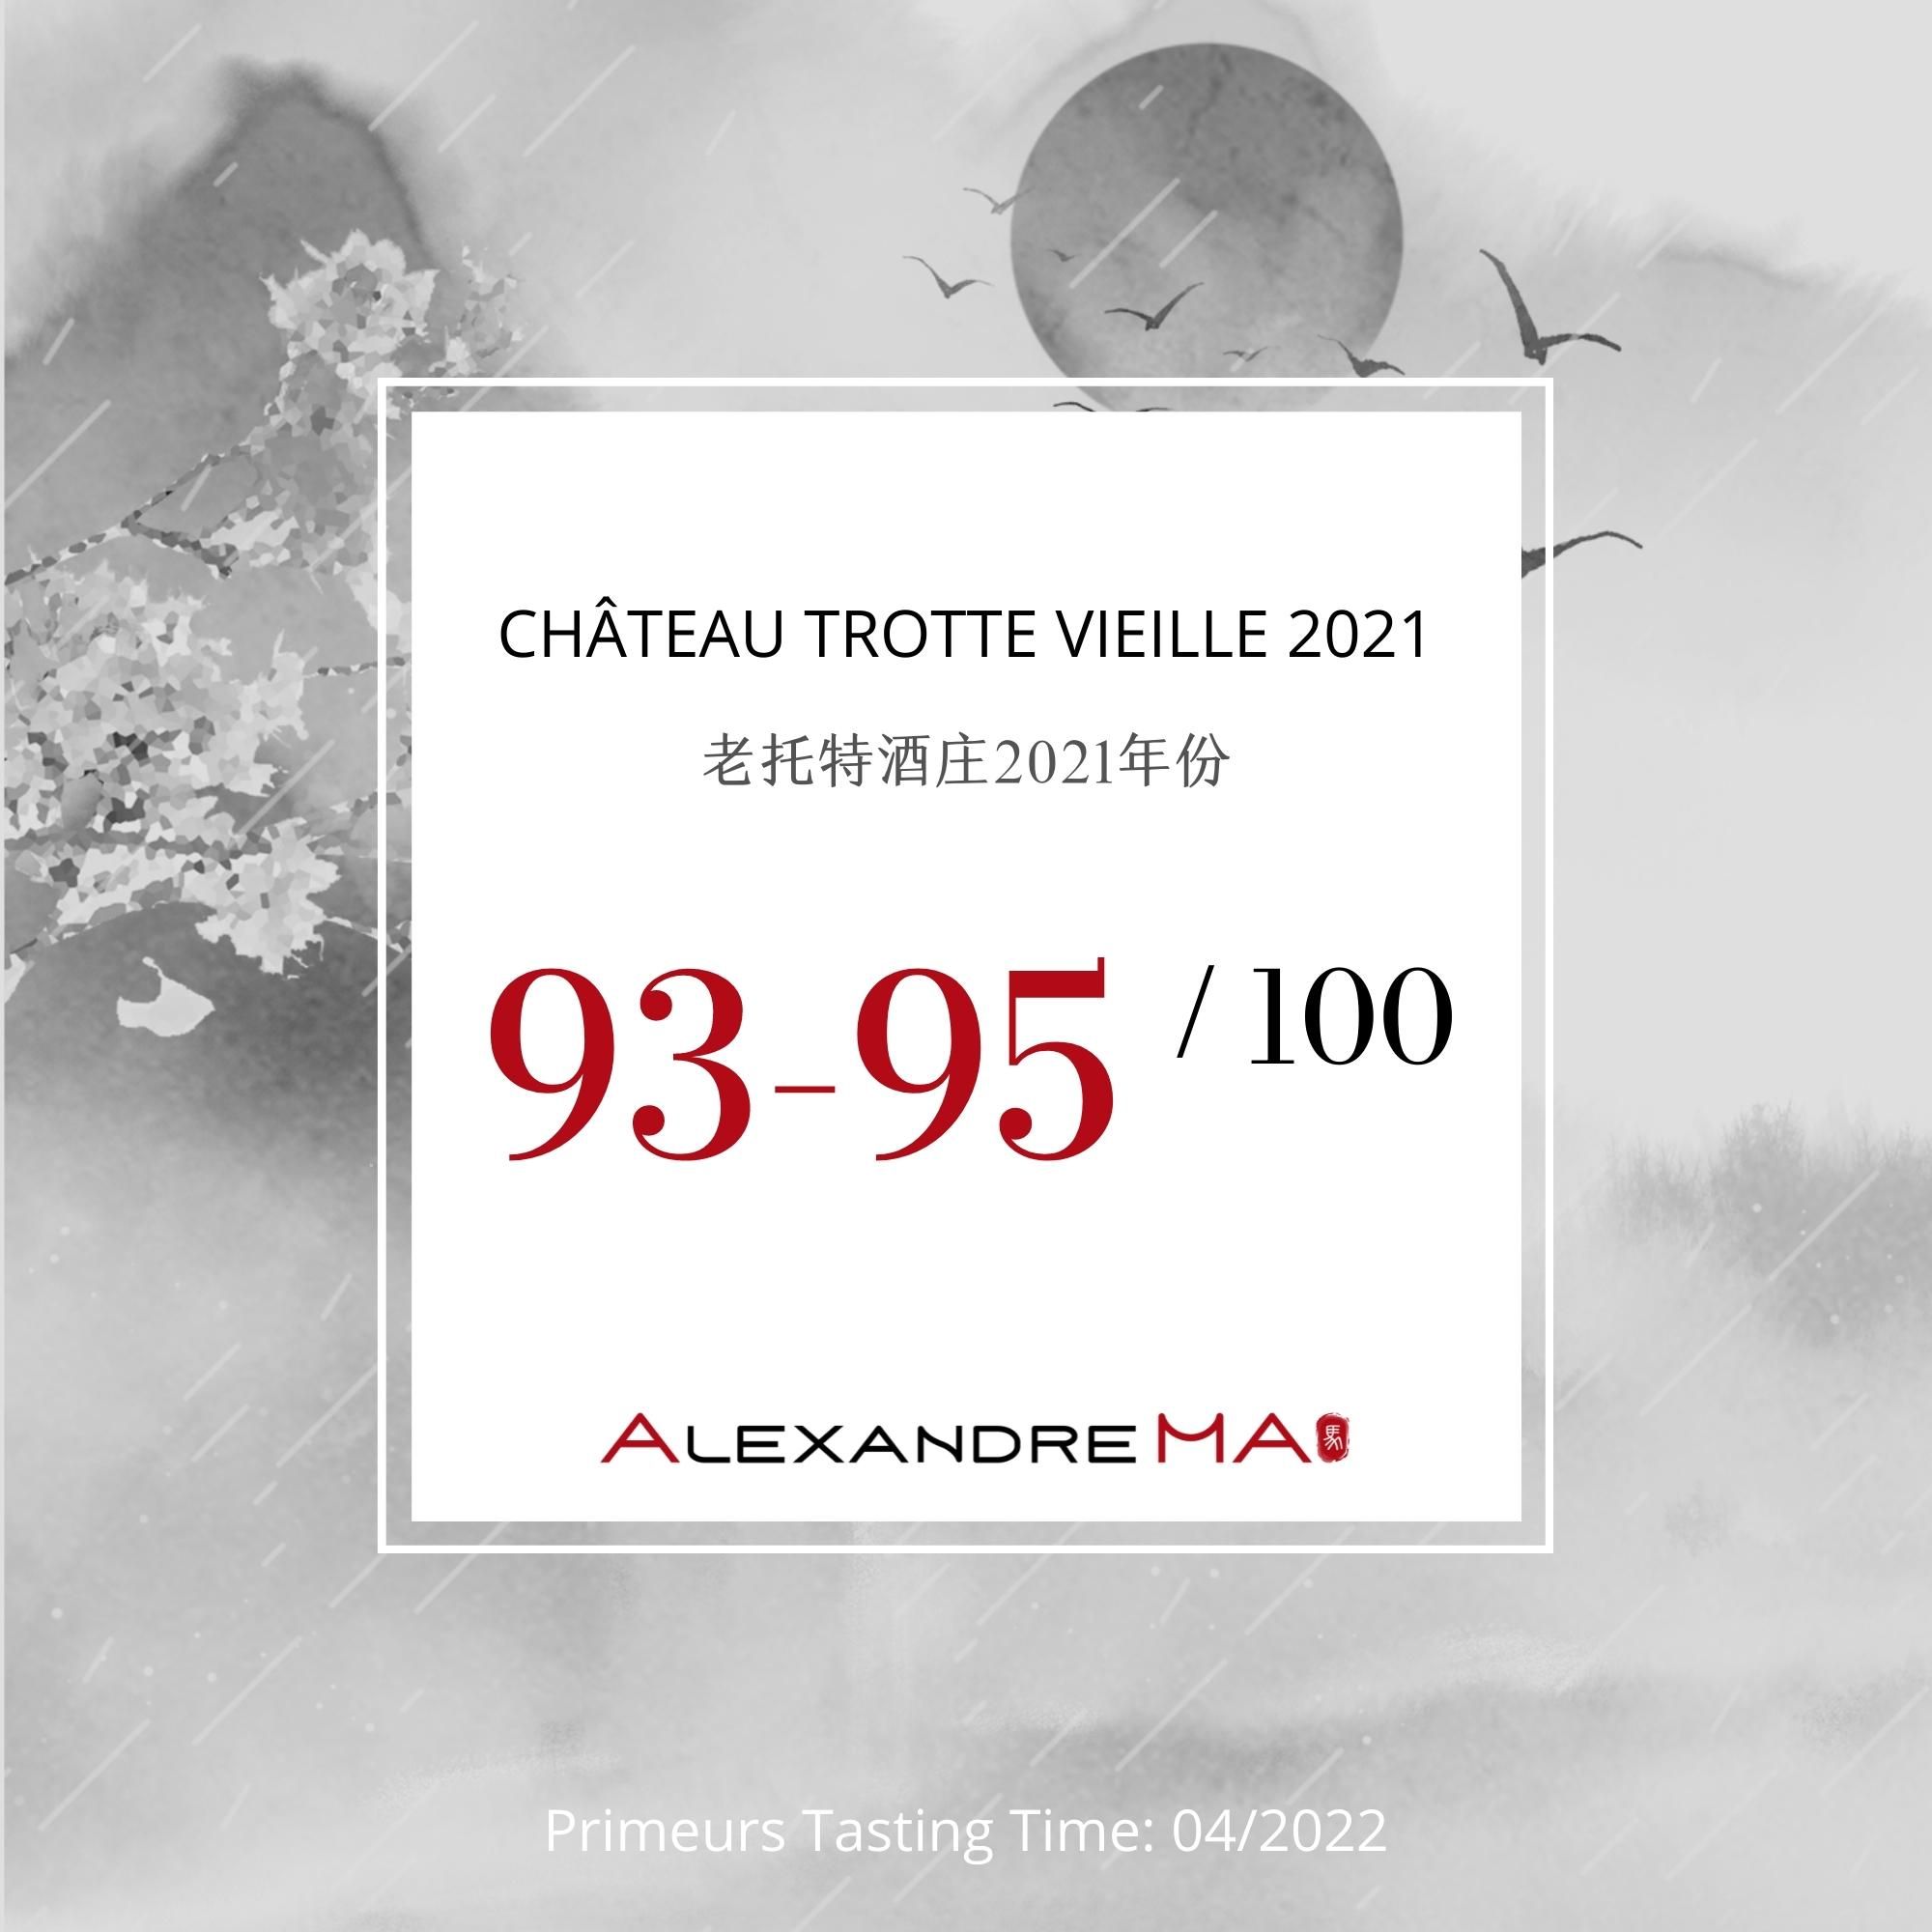 Château Trotte Vieille 2021 - Alexandre MA